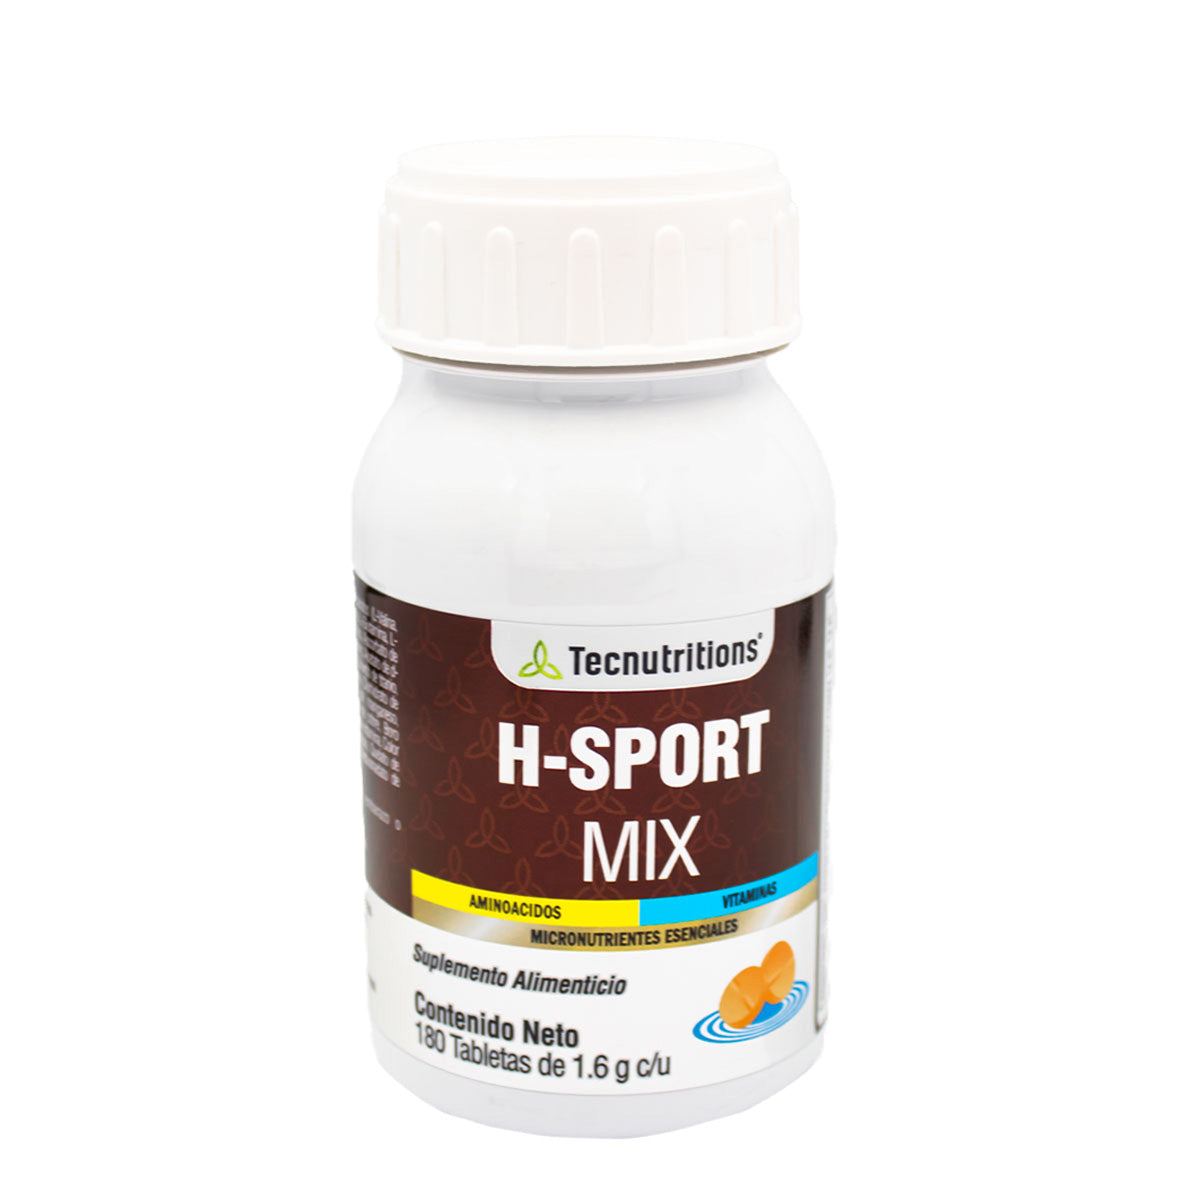 Suplemento alimenticio H-Sport Mix, 180 tabs, vitaminas para hombre